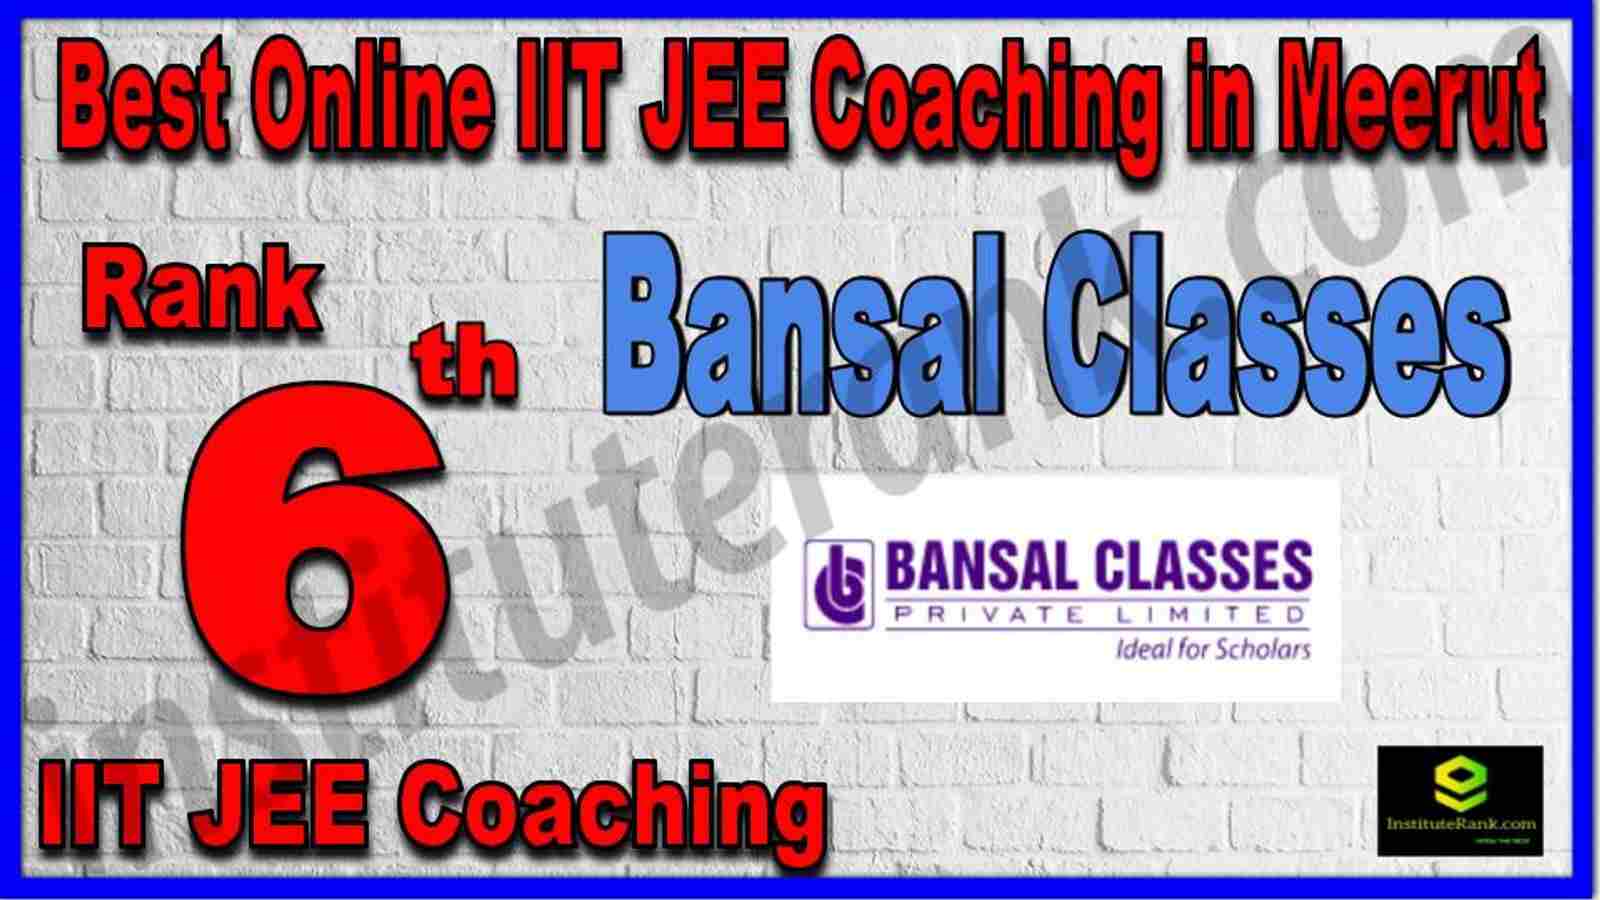 Rank 6th Best Online IIT JEE Coaching in Meerut